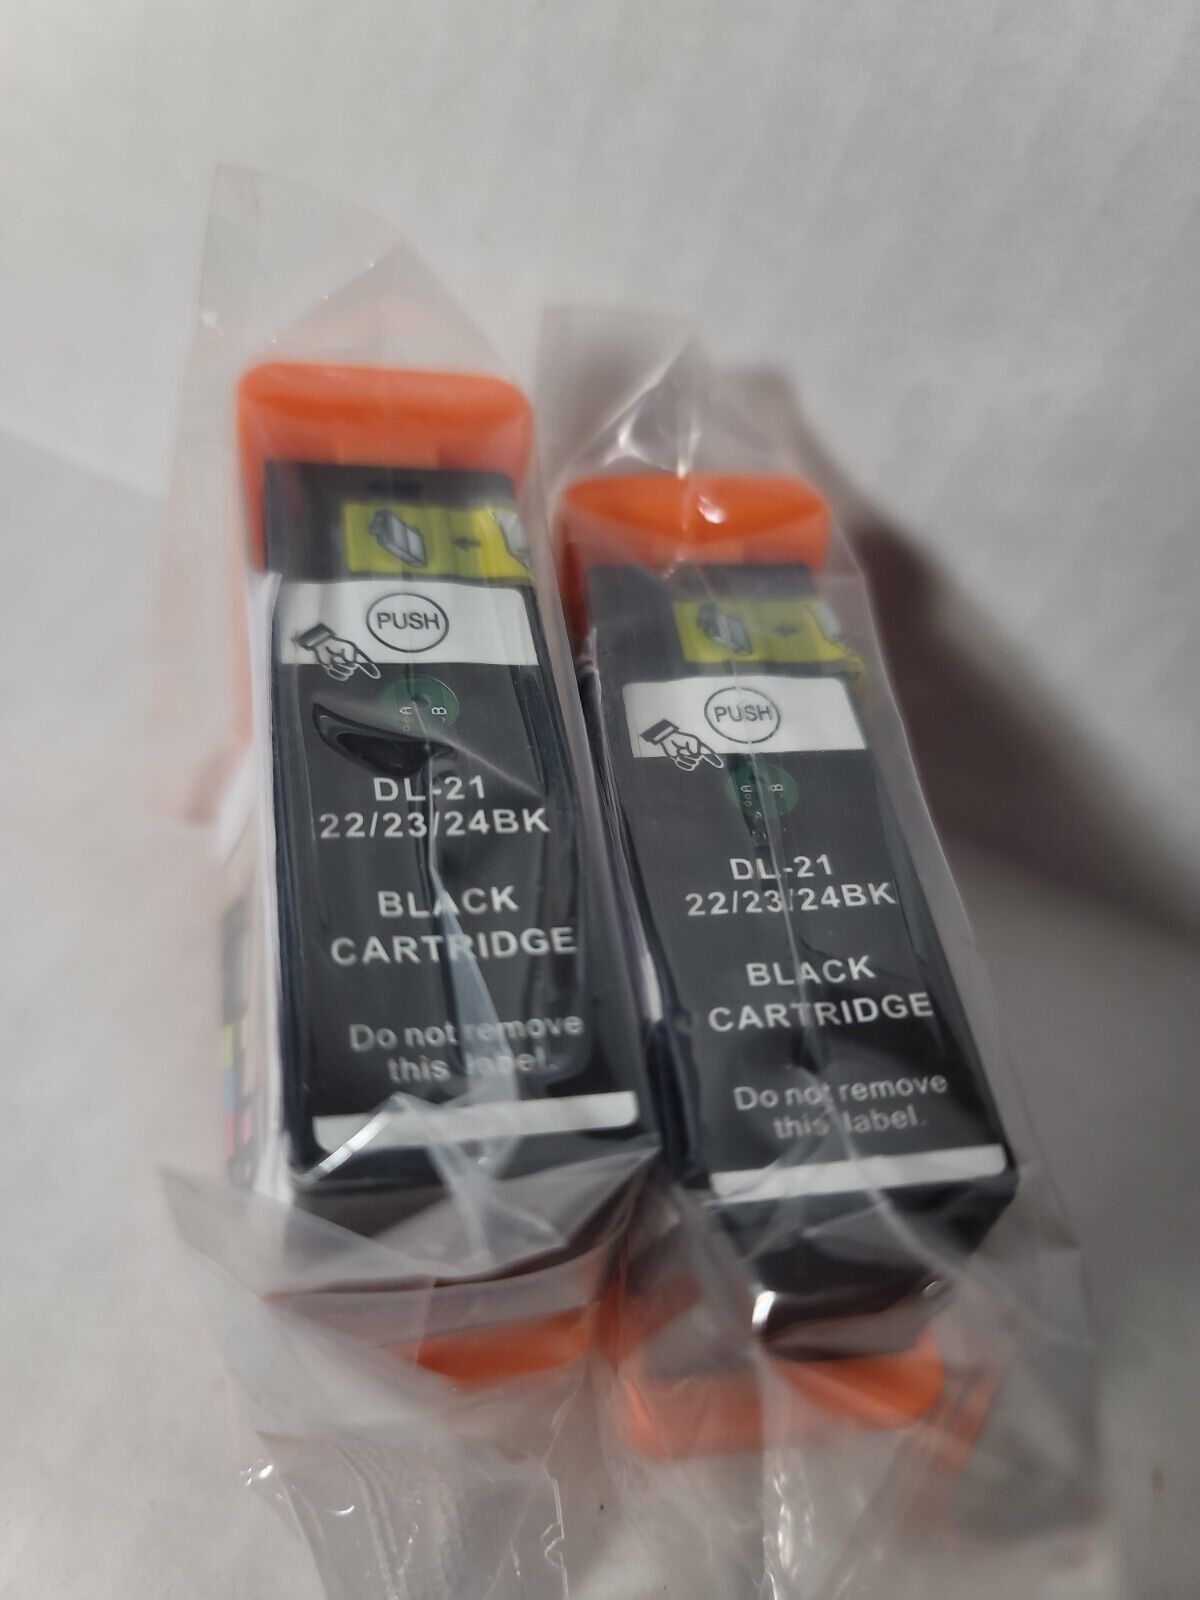 2 Genuine Dell Black Ink Cartridges New Sealed DL21 Lot